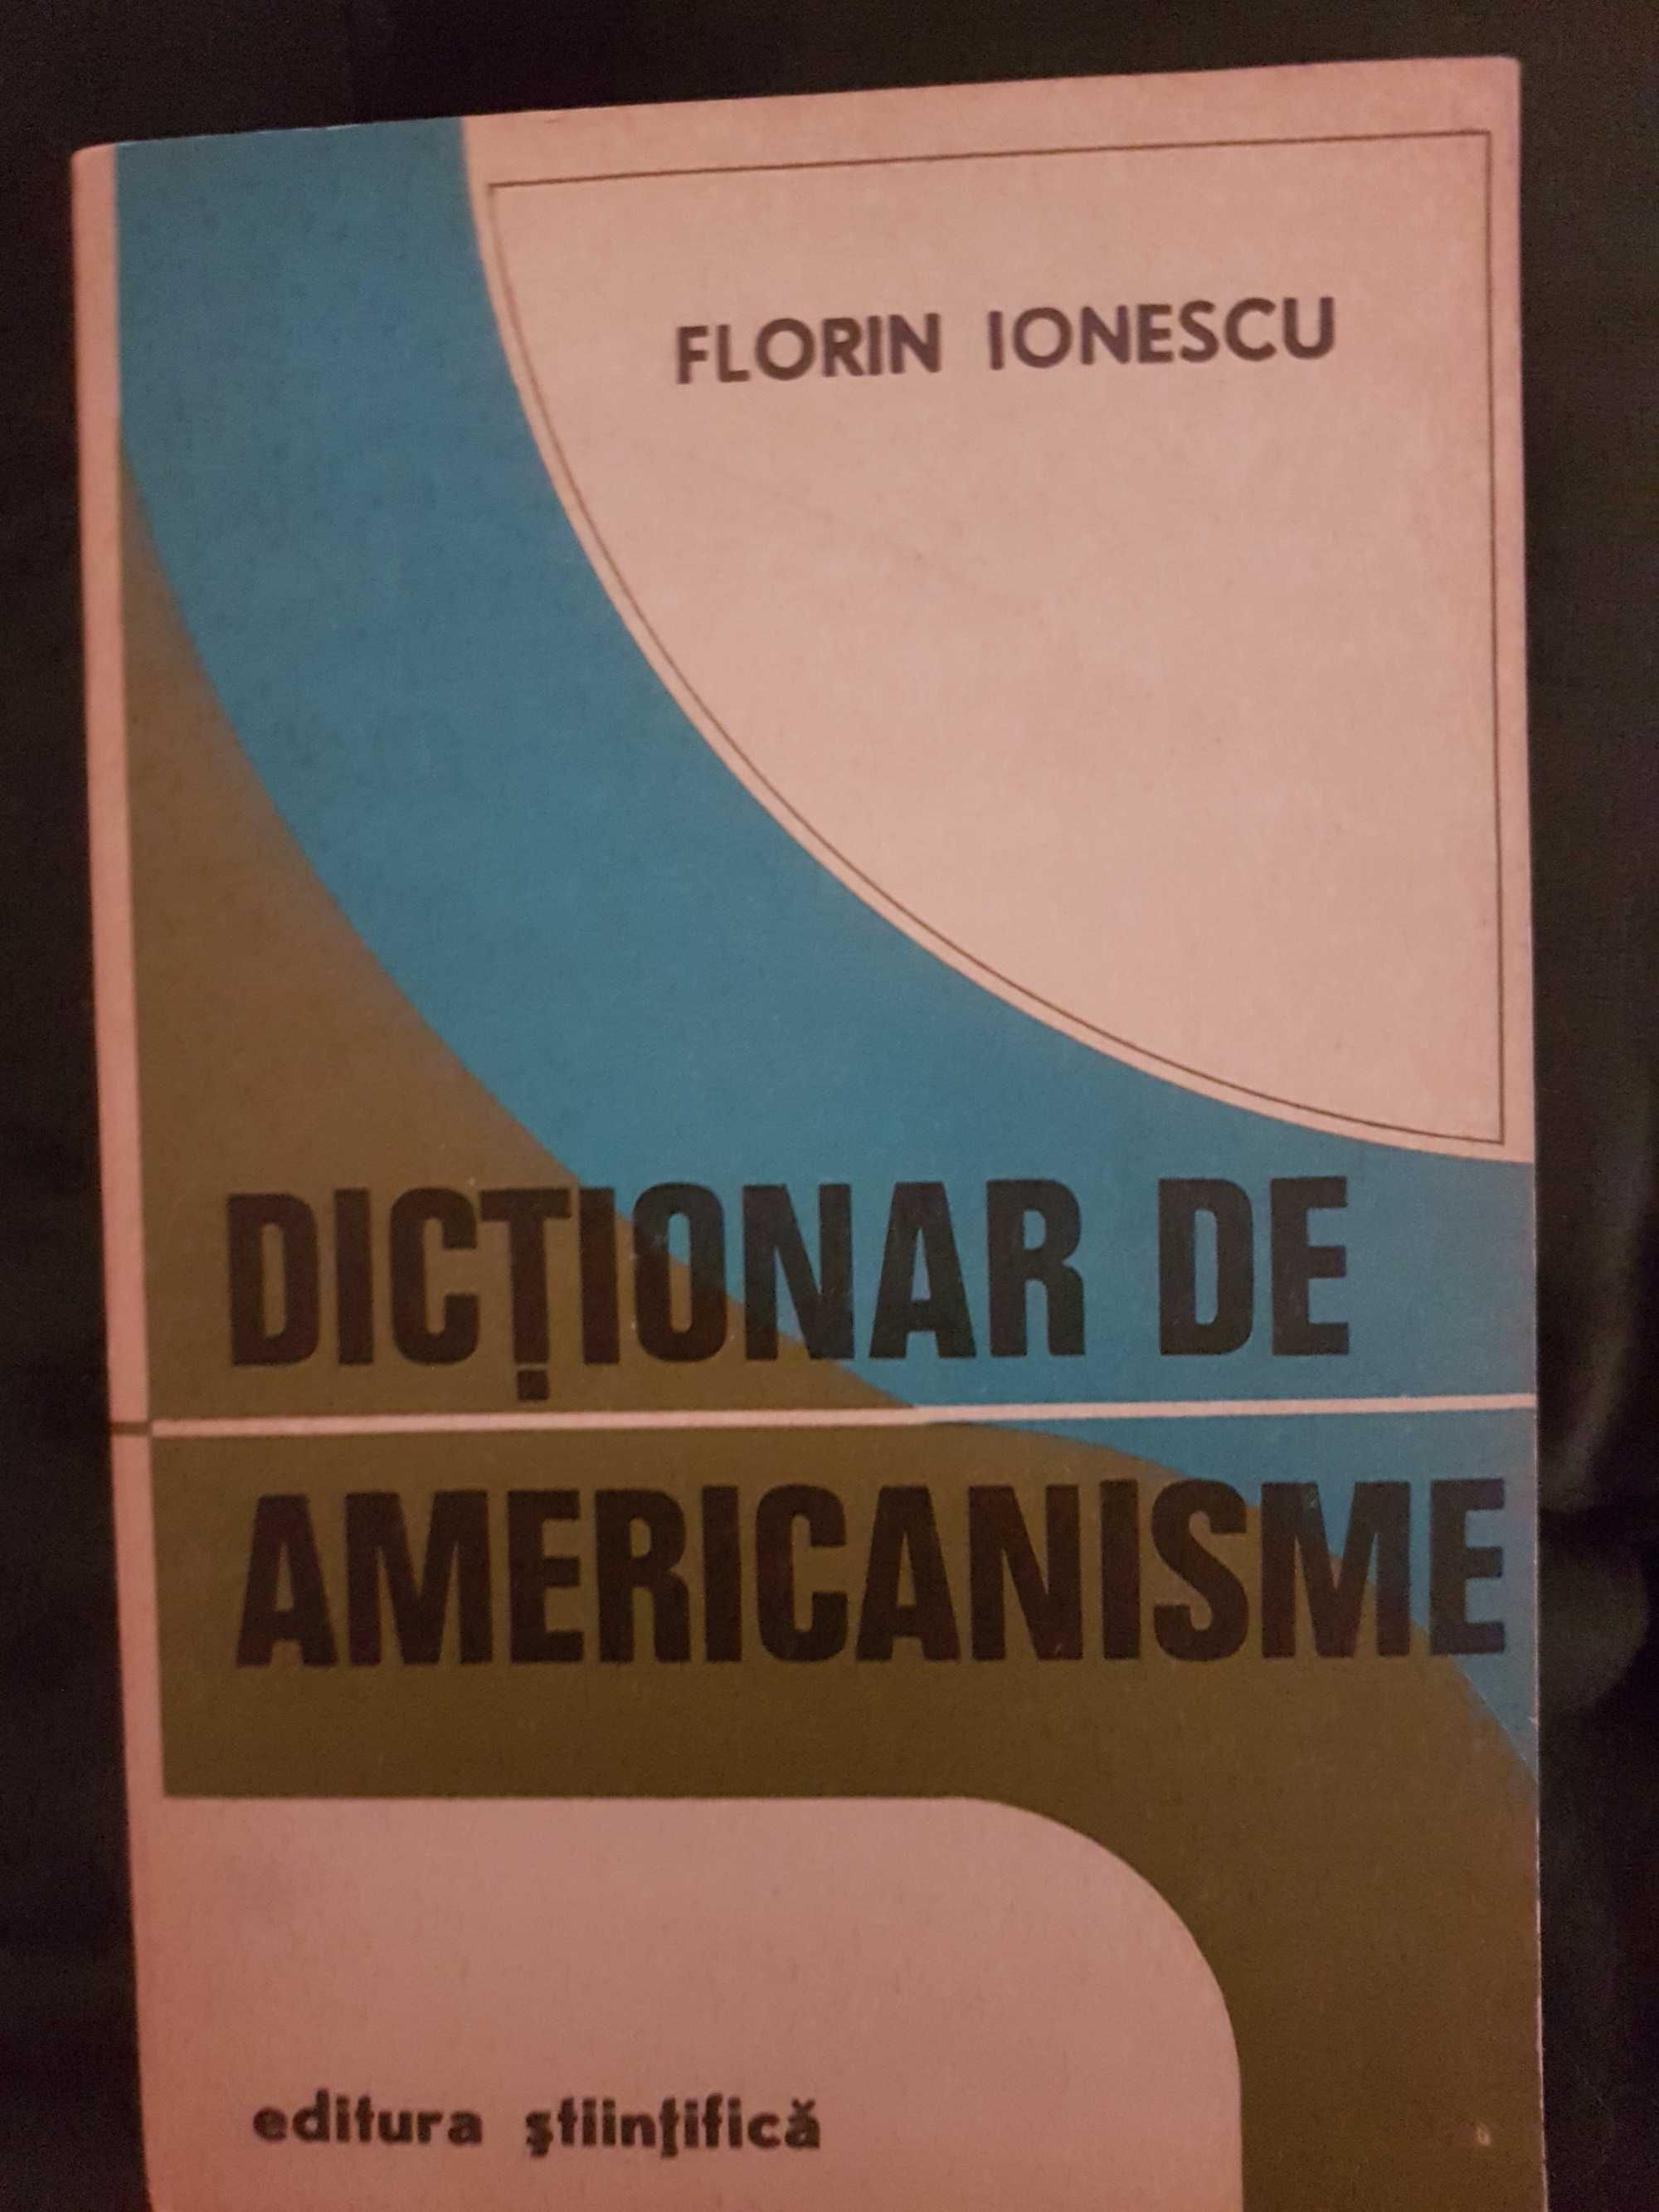 Dictionar de americanisme